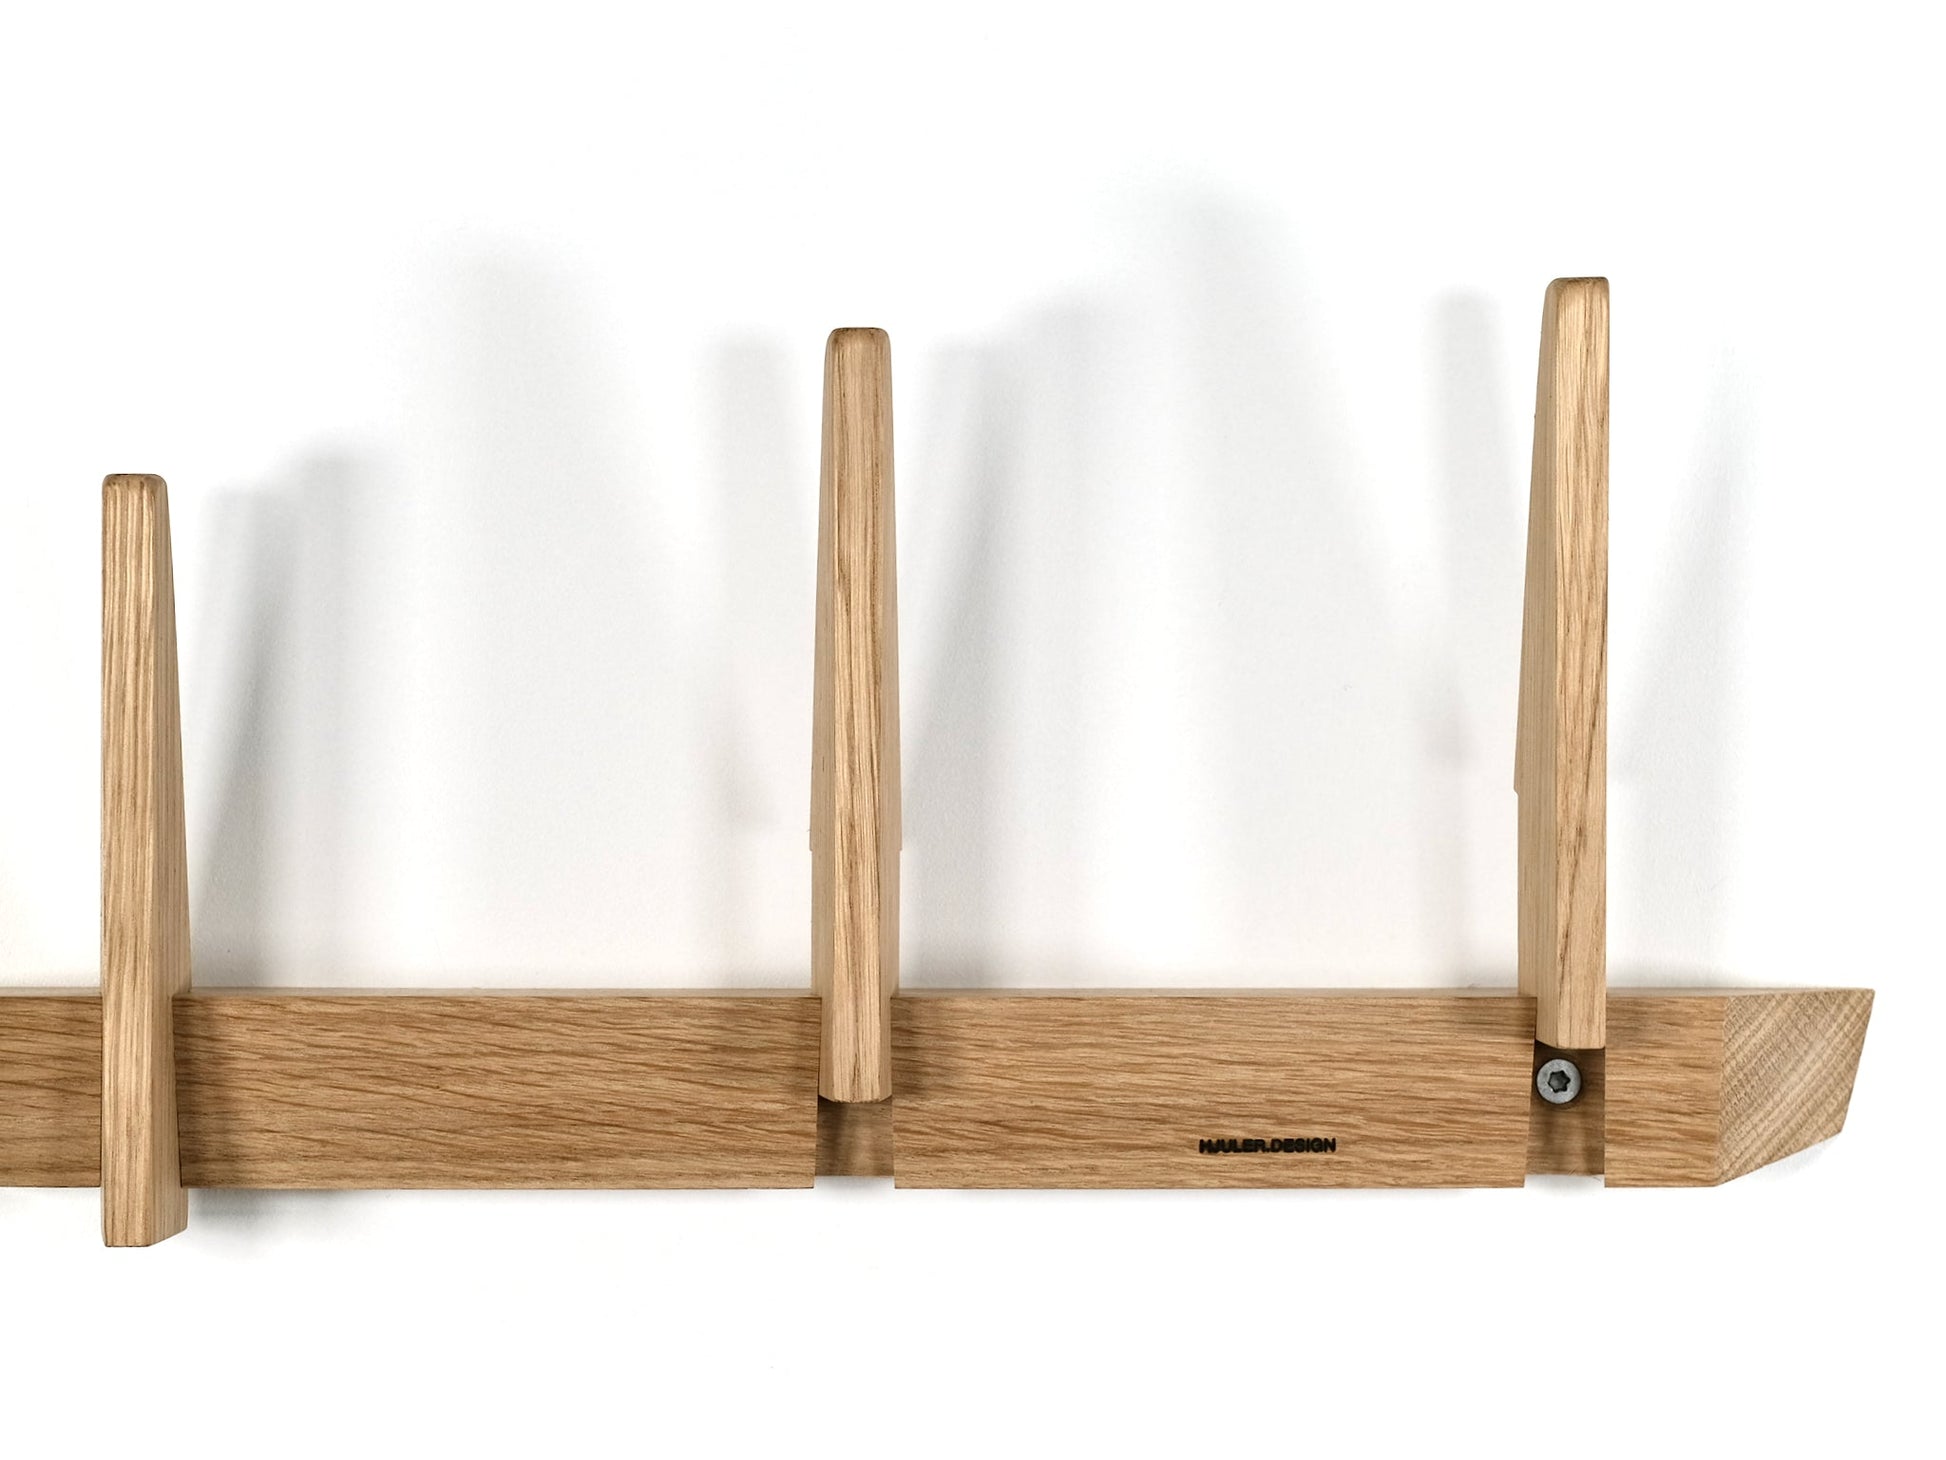 Knagerække enkel moderne design træ egetræ bæredygtig dansk fra HJULER DESIGN